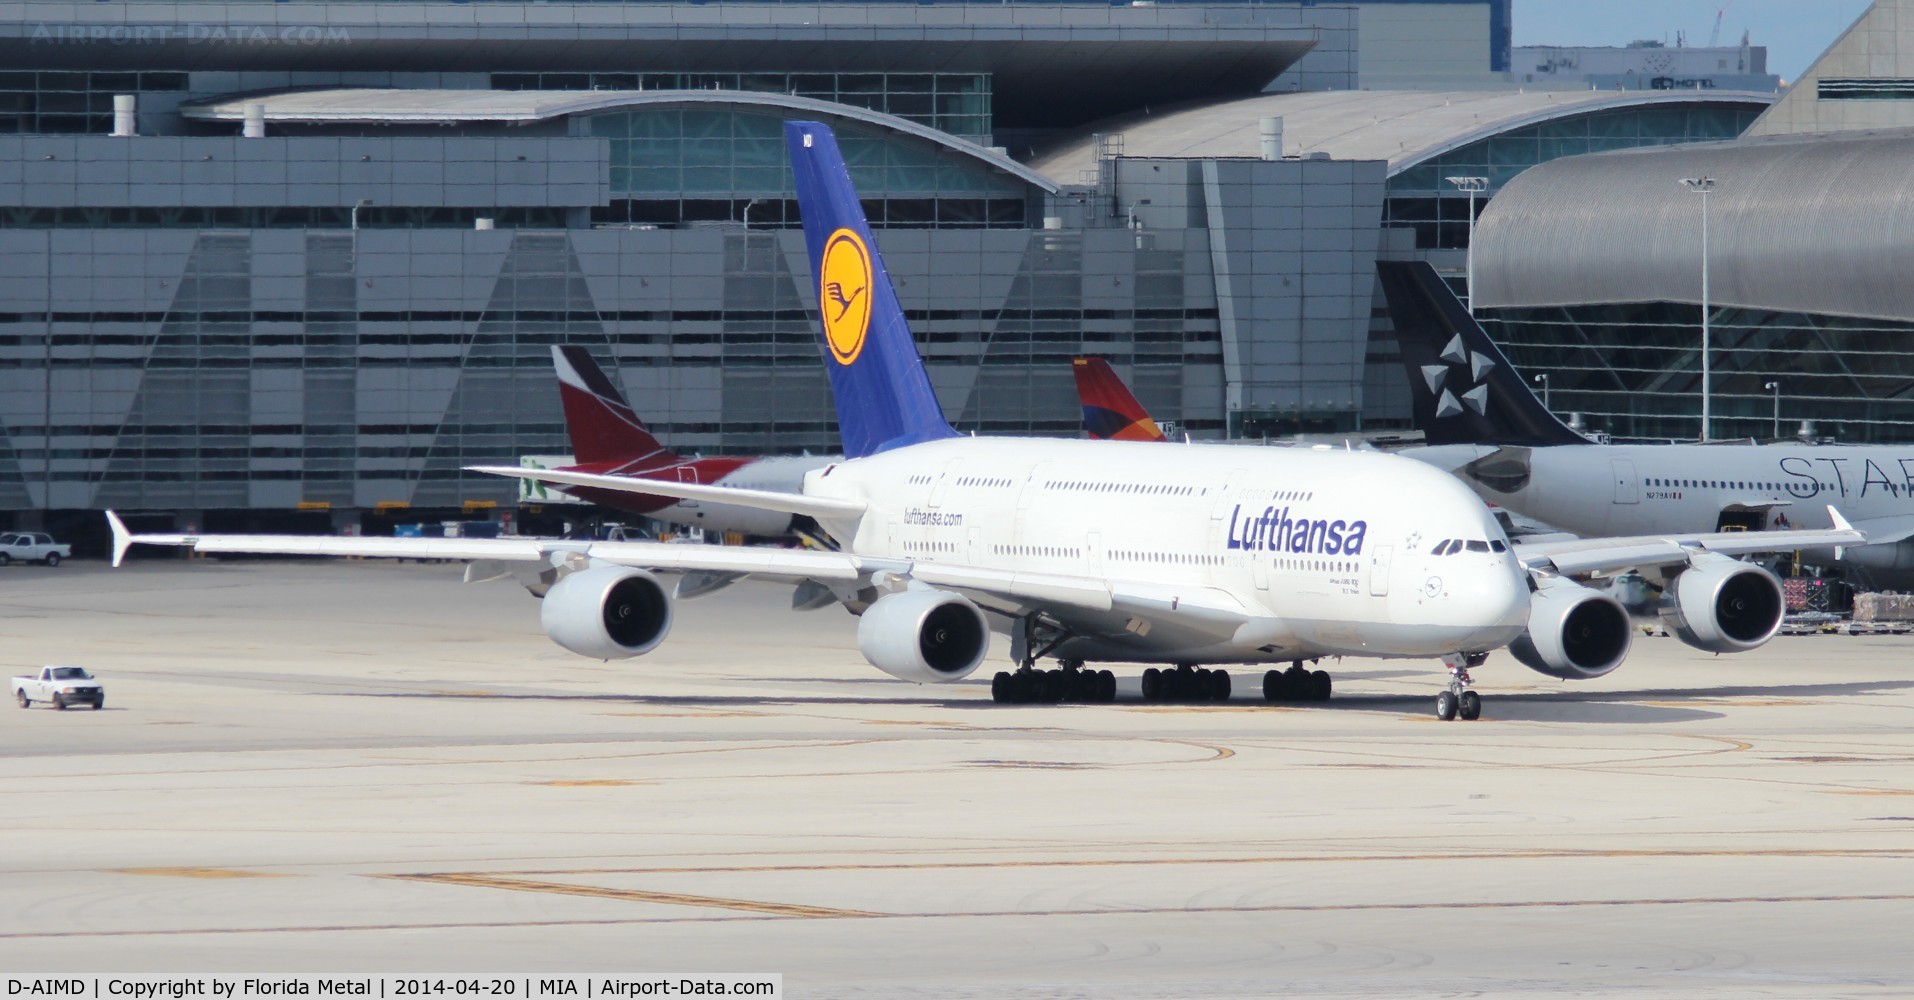 D-AIMD, 2010 Airbus A380-841 C/N 048, Lufthansa A380